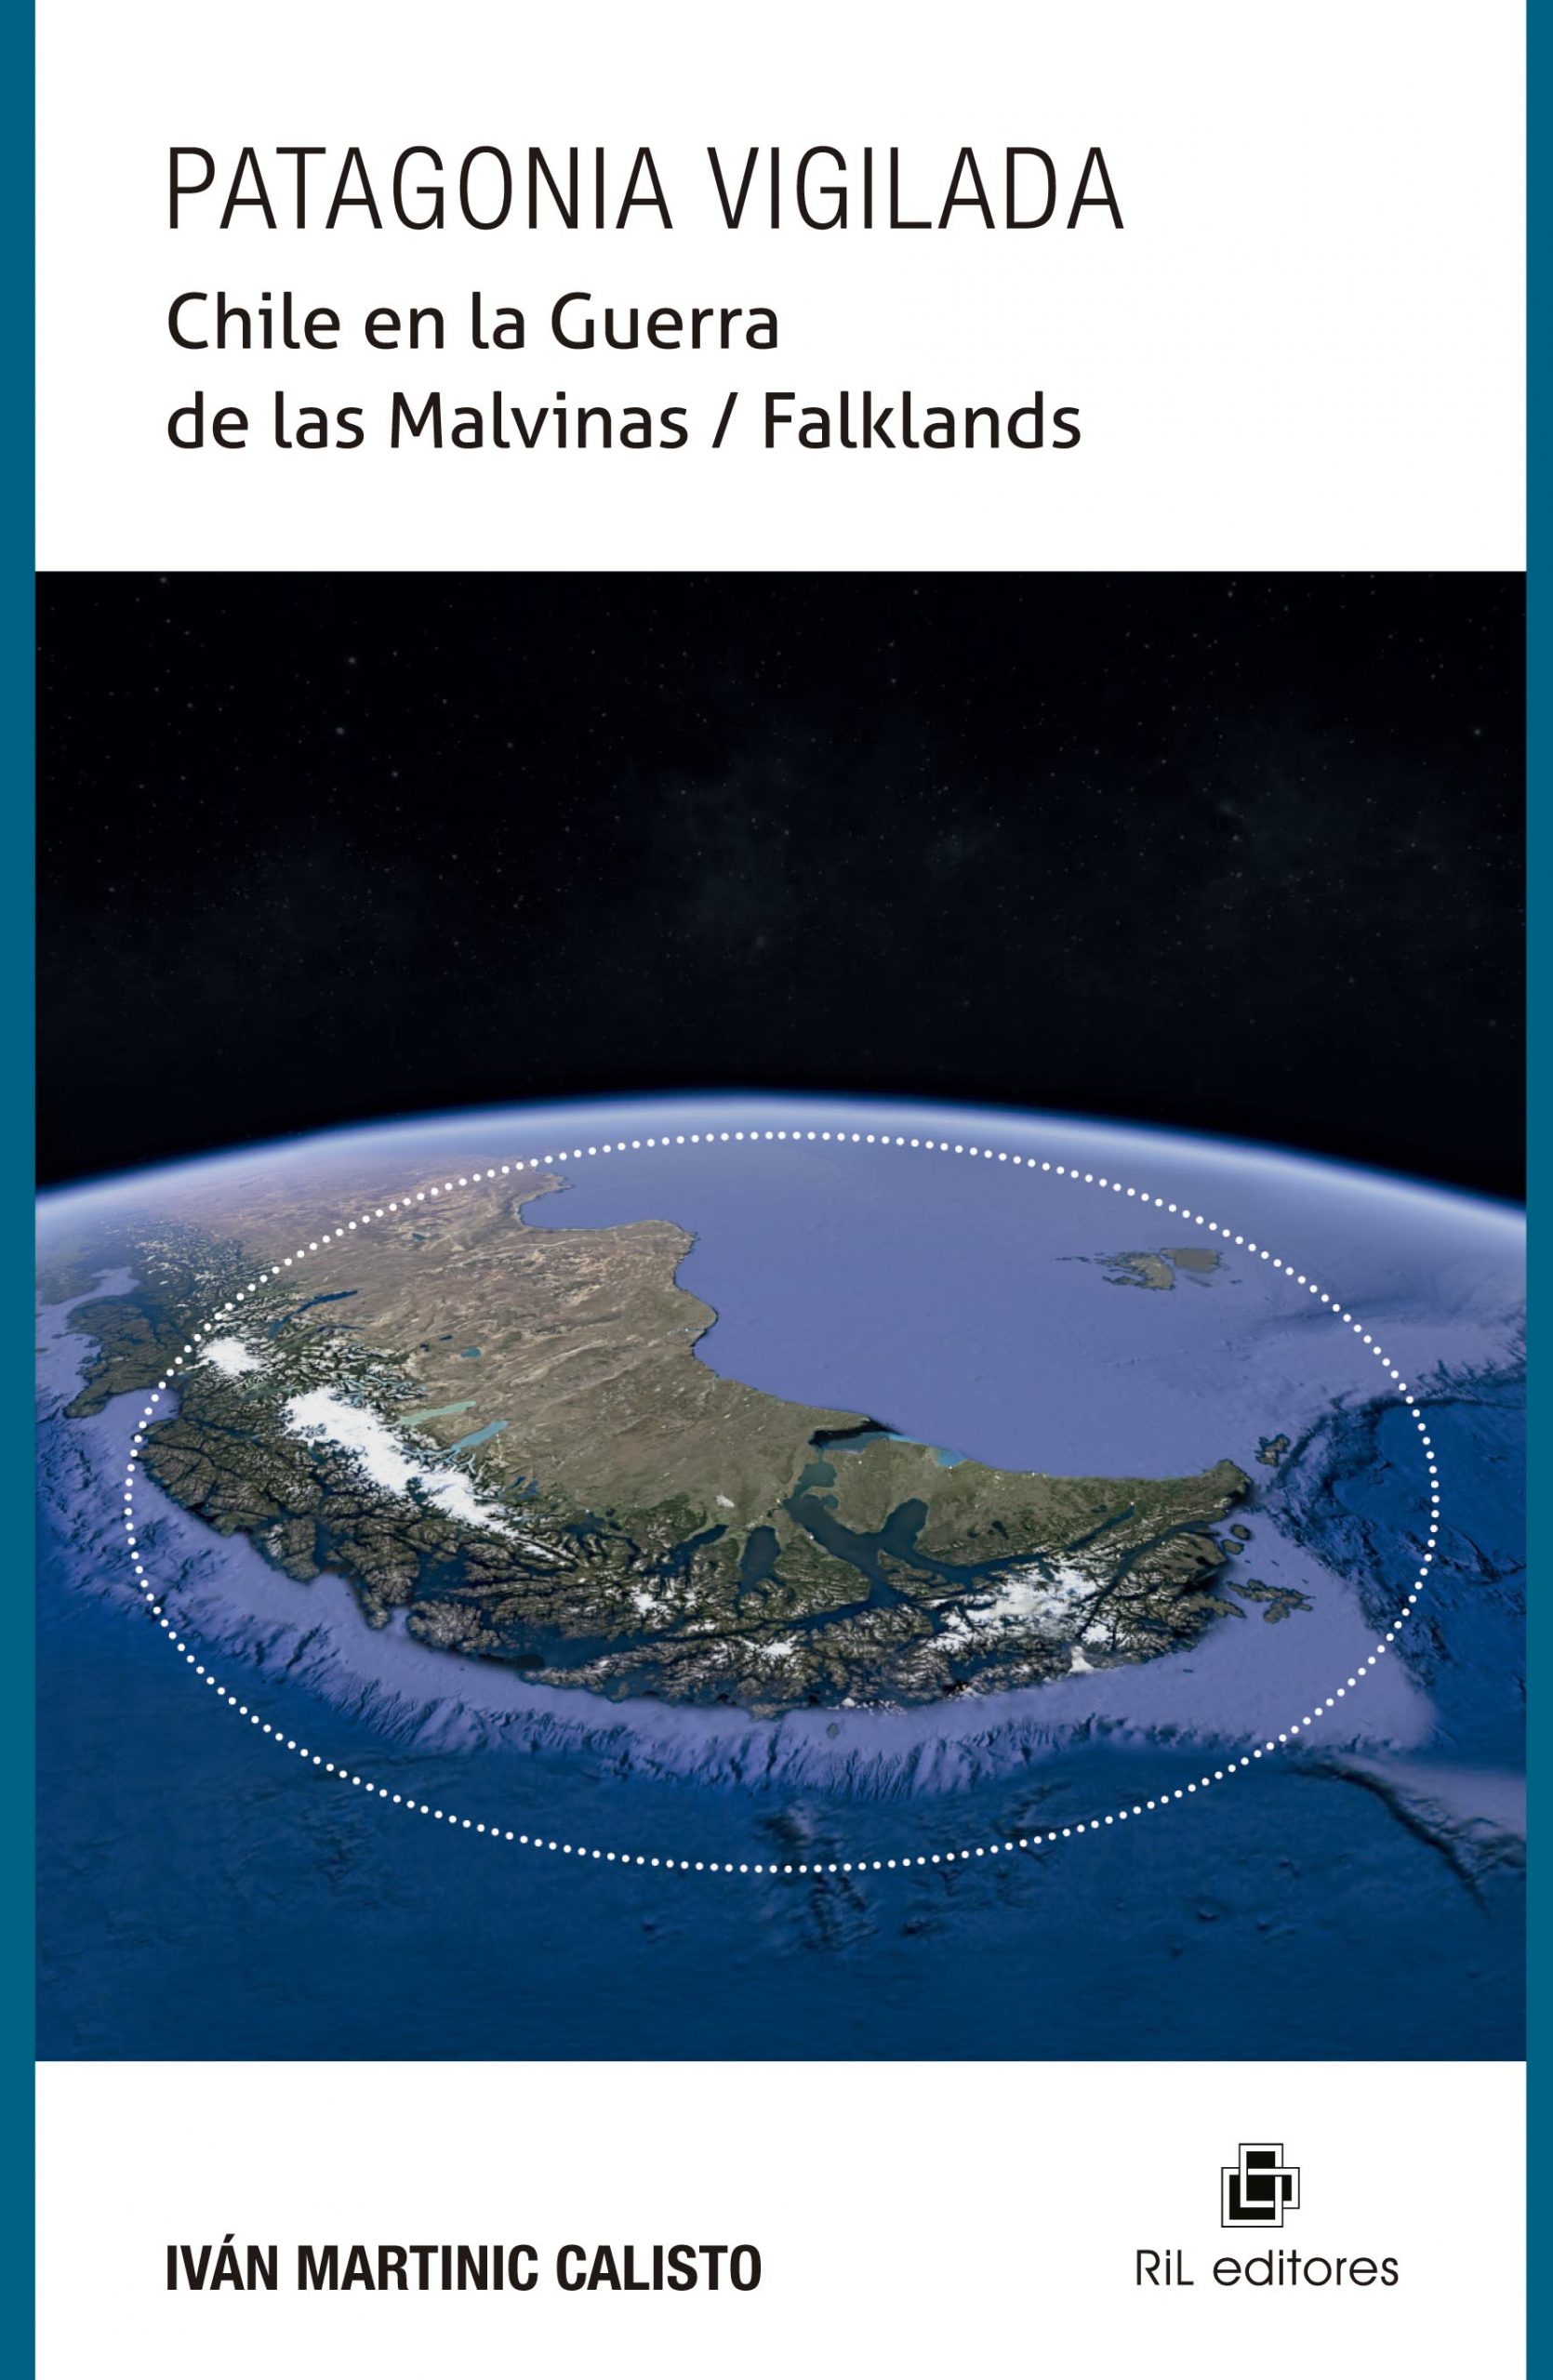 Patagonia vigilada. Chile en la Guerra de las Malvinas / Falklands 1